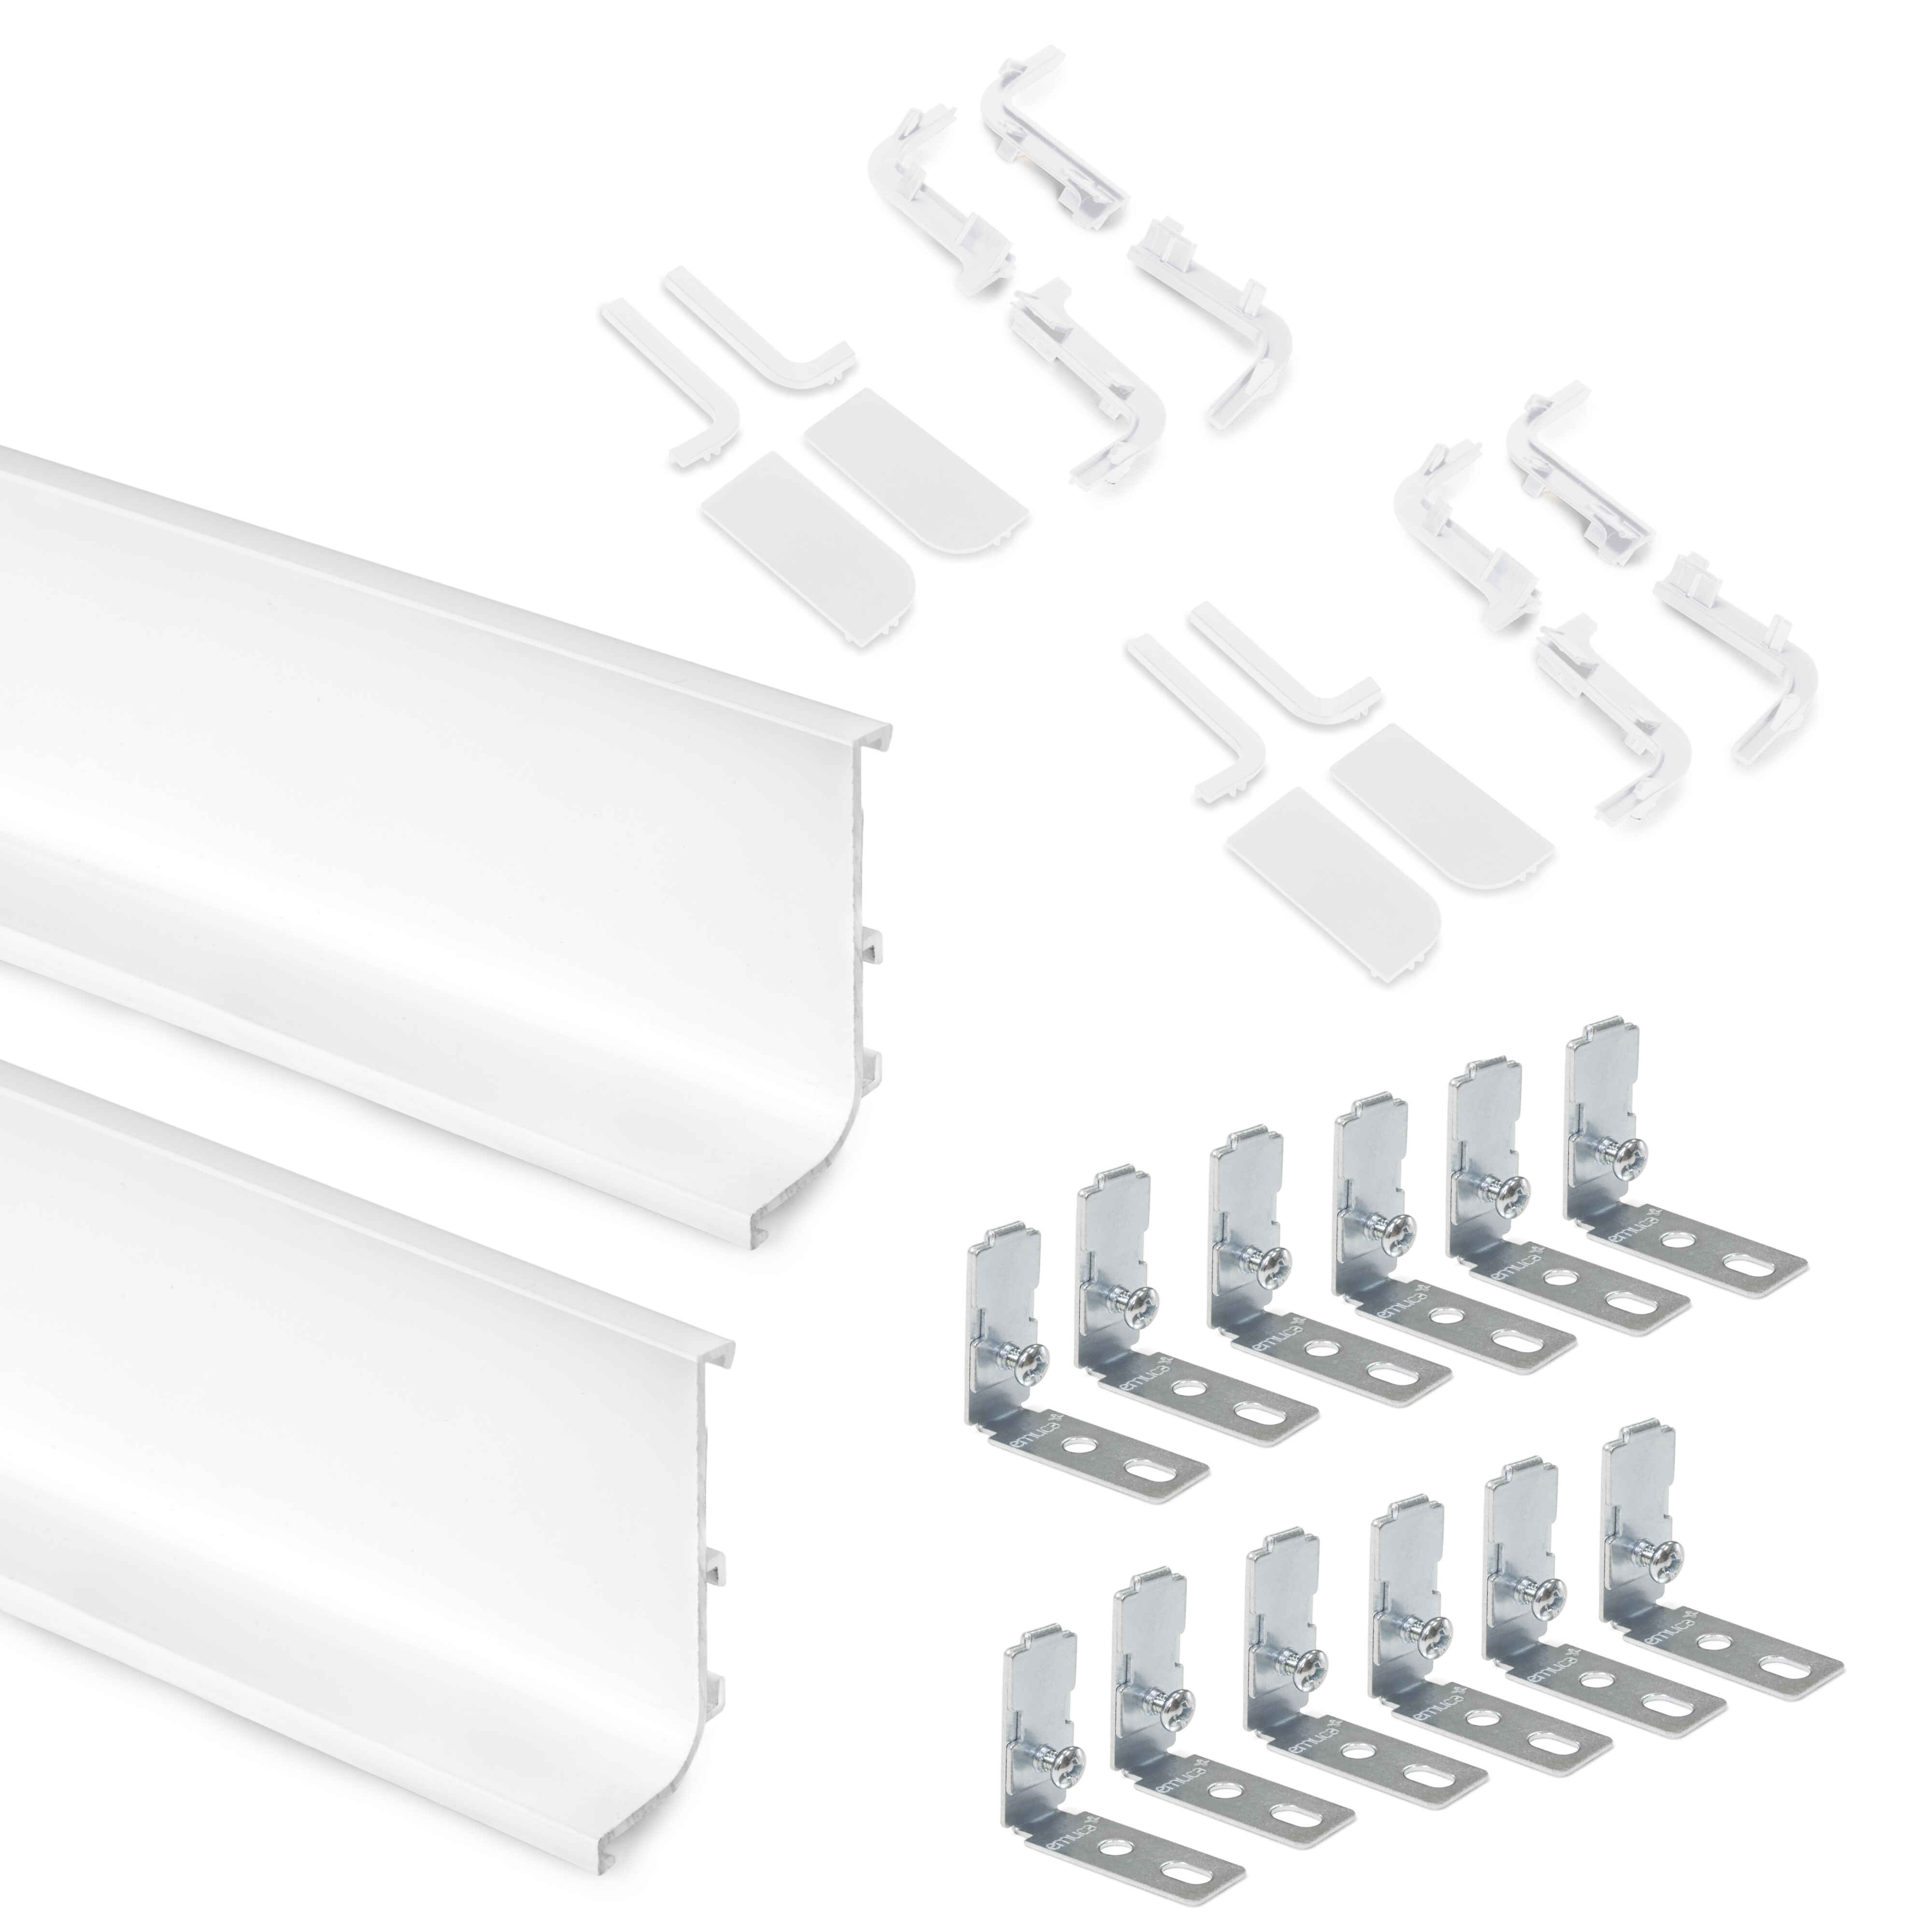 Kit de perfil Gola superior para muebles de cocina, Pintado blanco, Aluminio